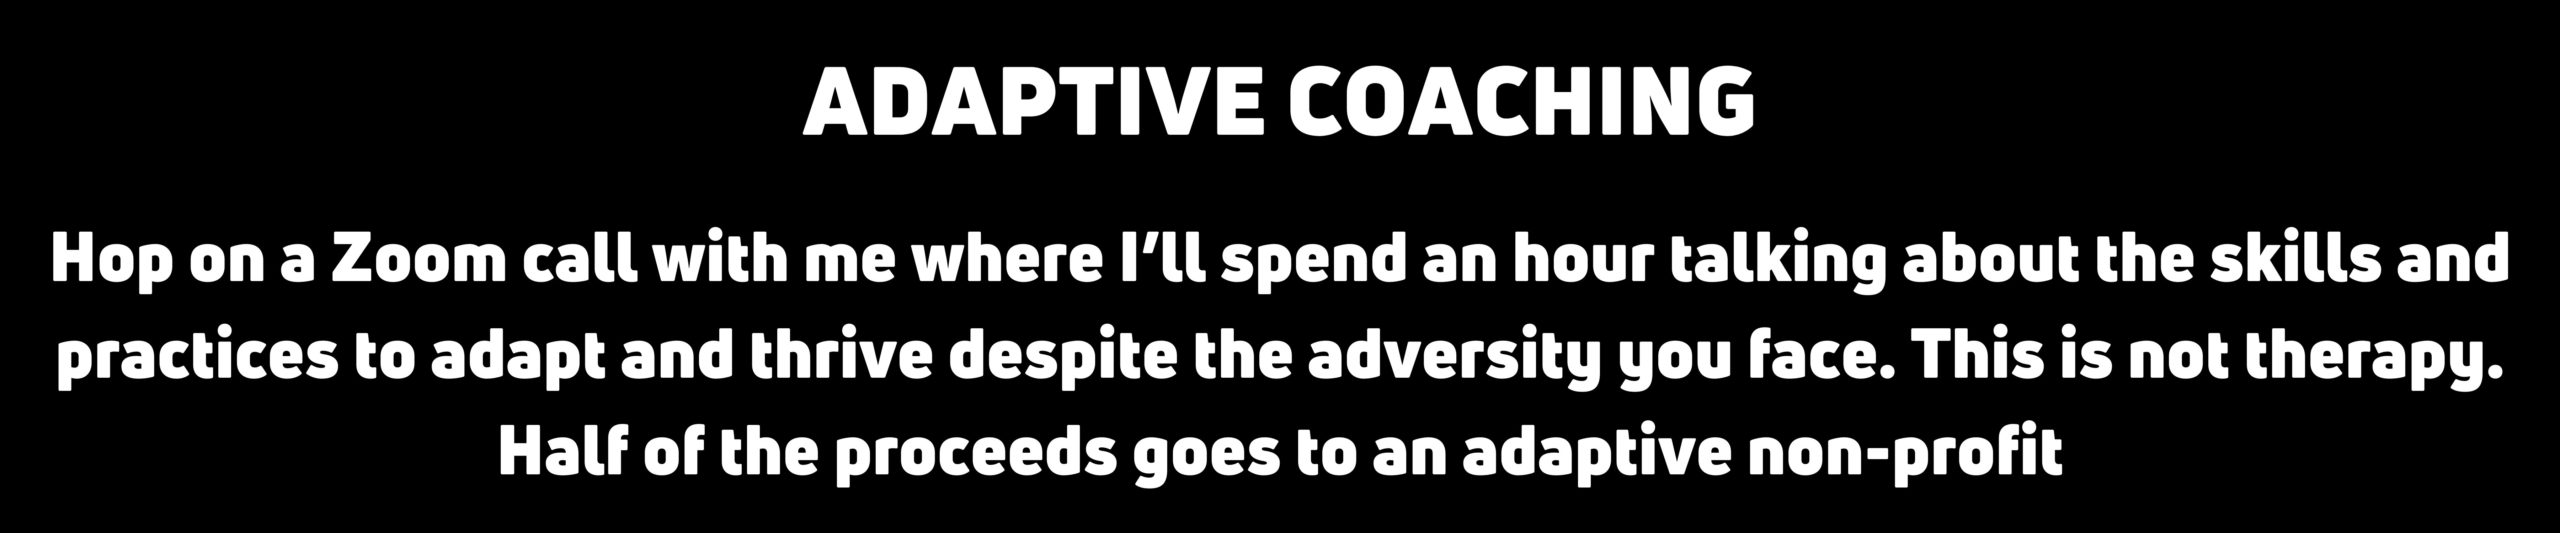 adaptive coaching